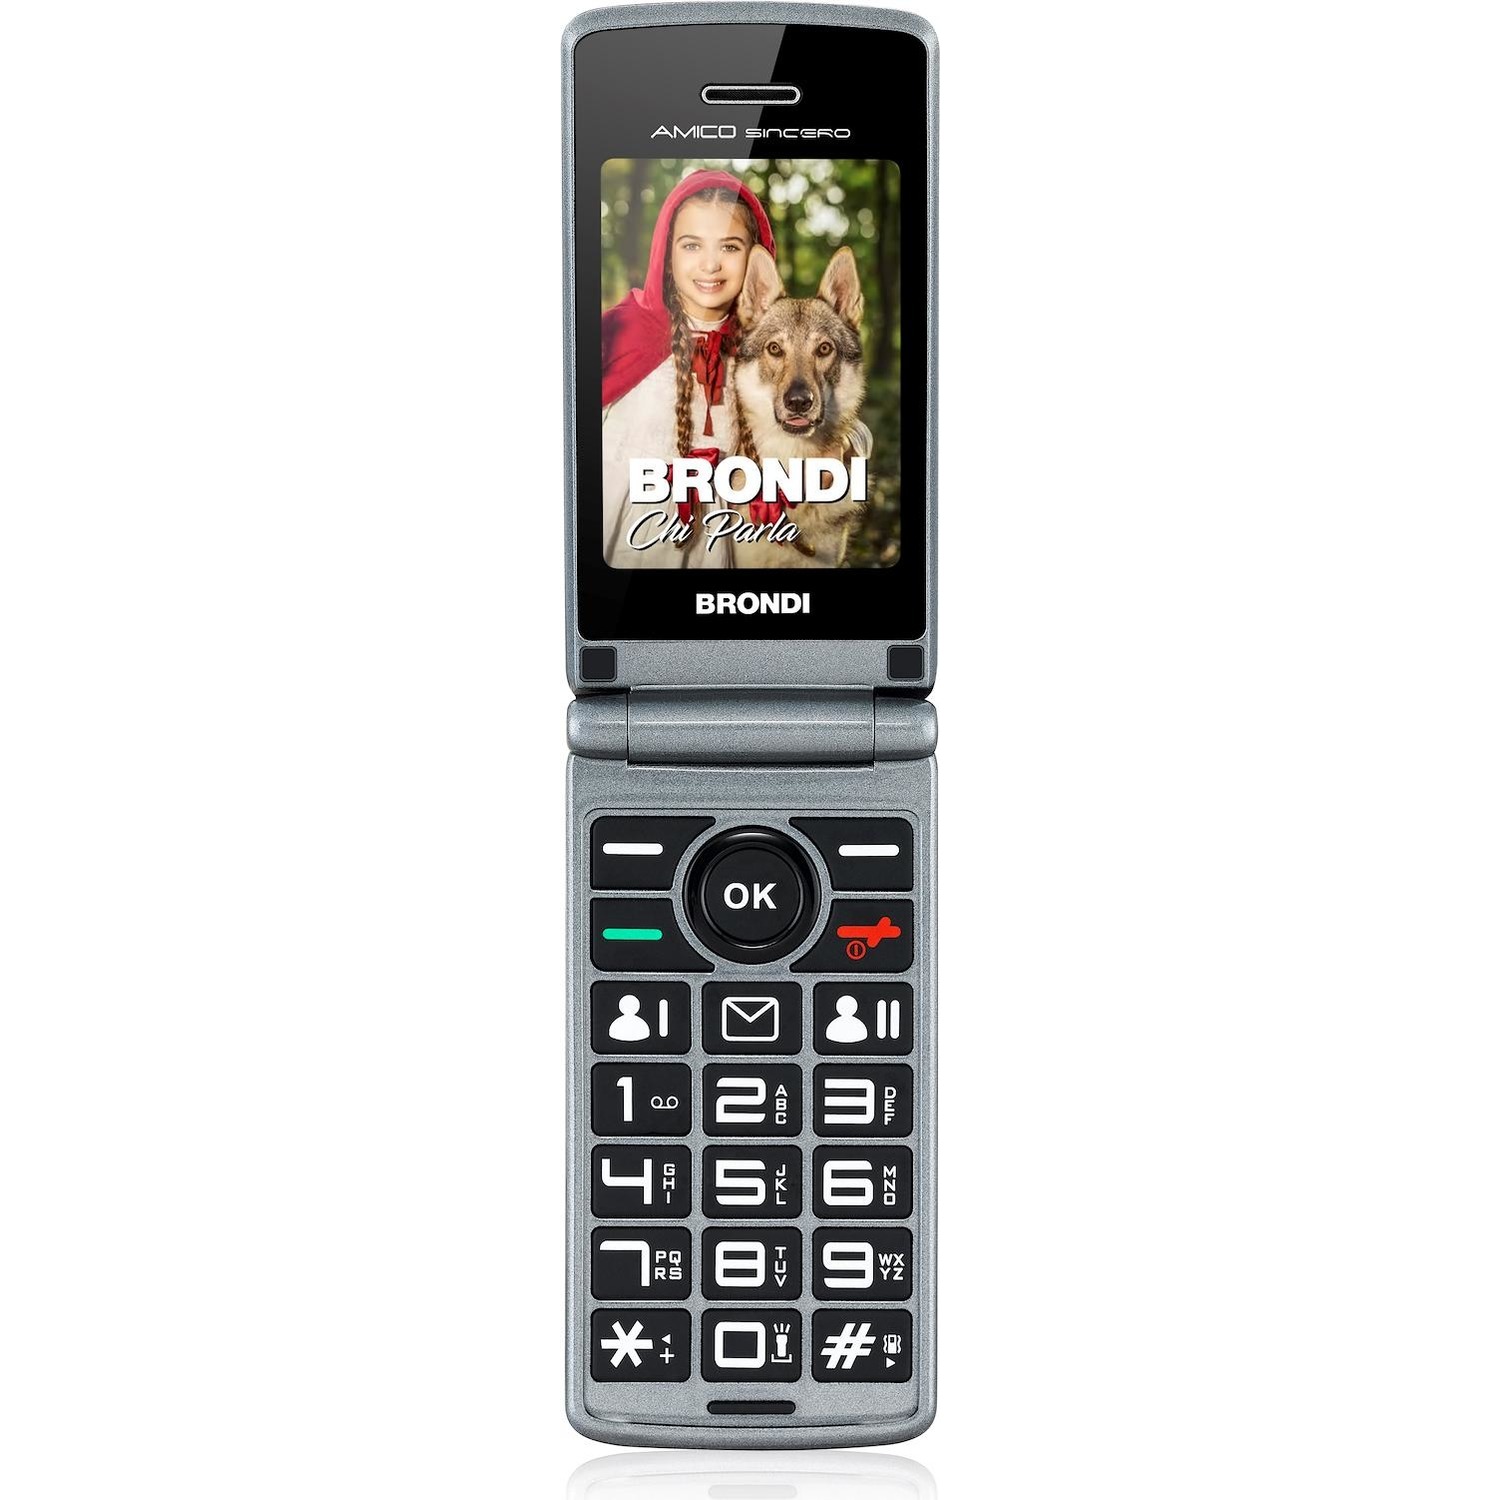 Immagine per Cellulare Brondi Easy Phone Amico Sincero nero da DIMOStore